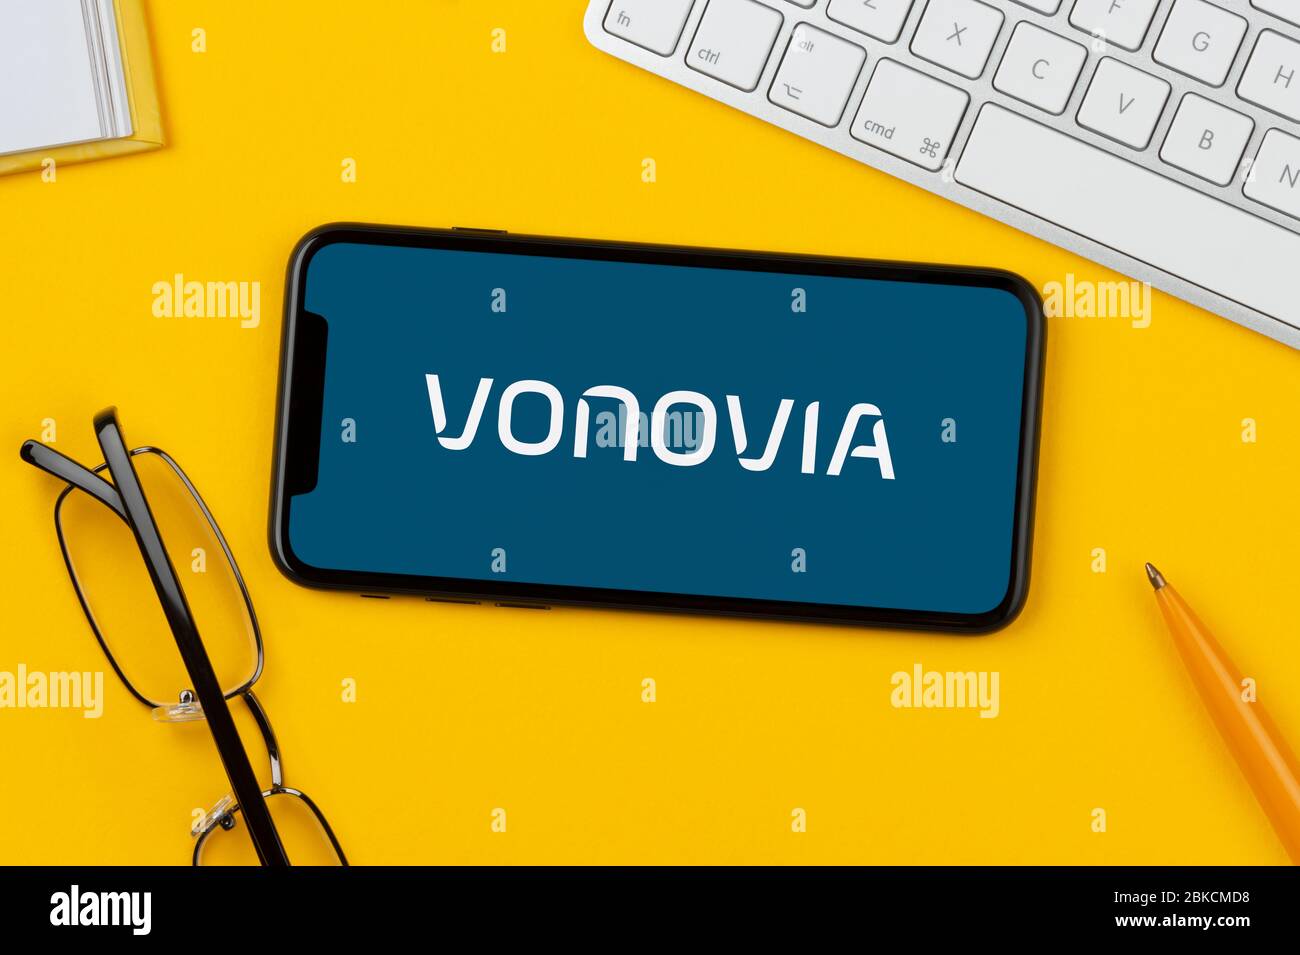 Uno smartphone con il logo Vonovia è appoggiato su uno sfondo giallo insieme a tastiera, occhiali, penna e libro (solo per uso editoriale). Foto Stock